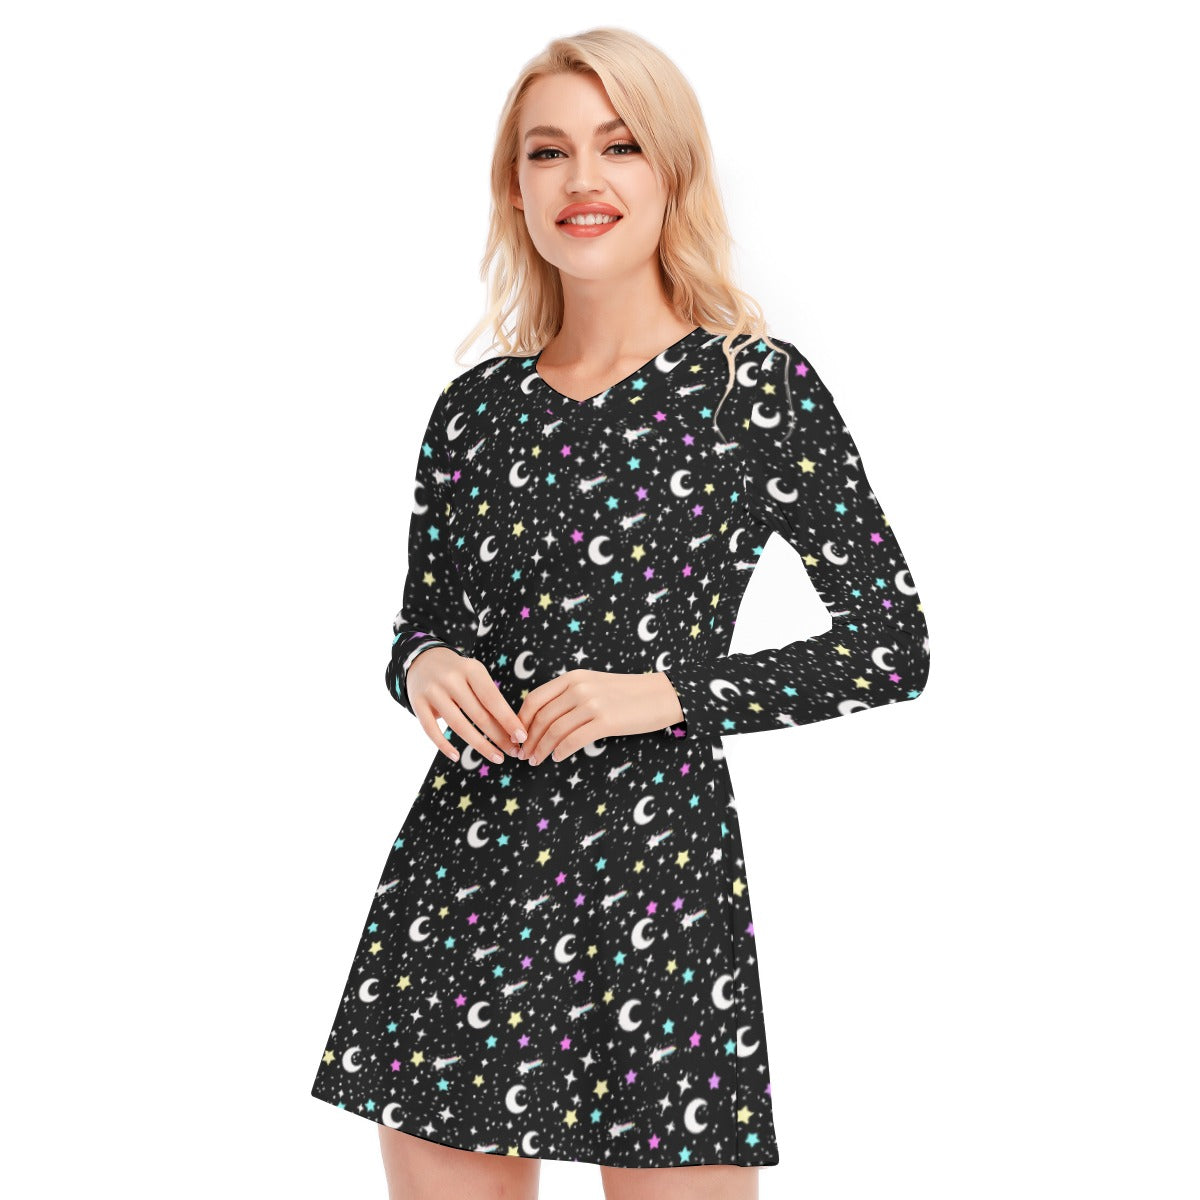 Starry Glitter Women's V-neck Long Sleeve Dress (Black)